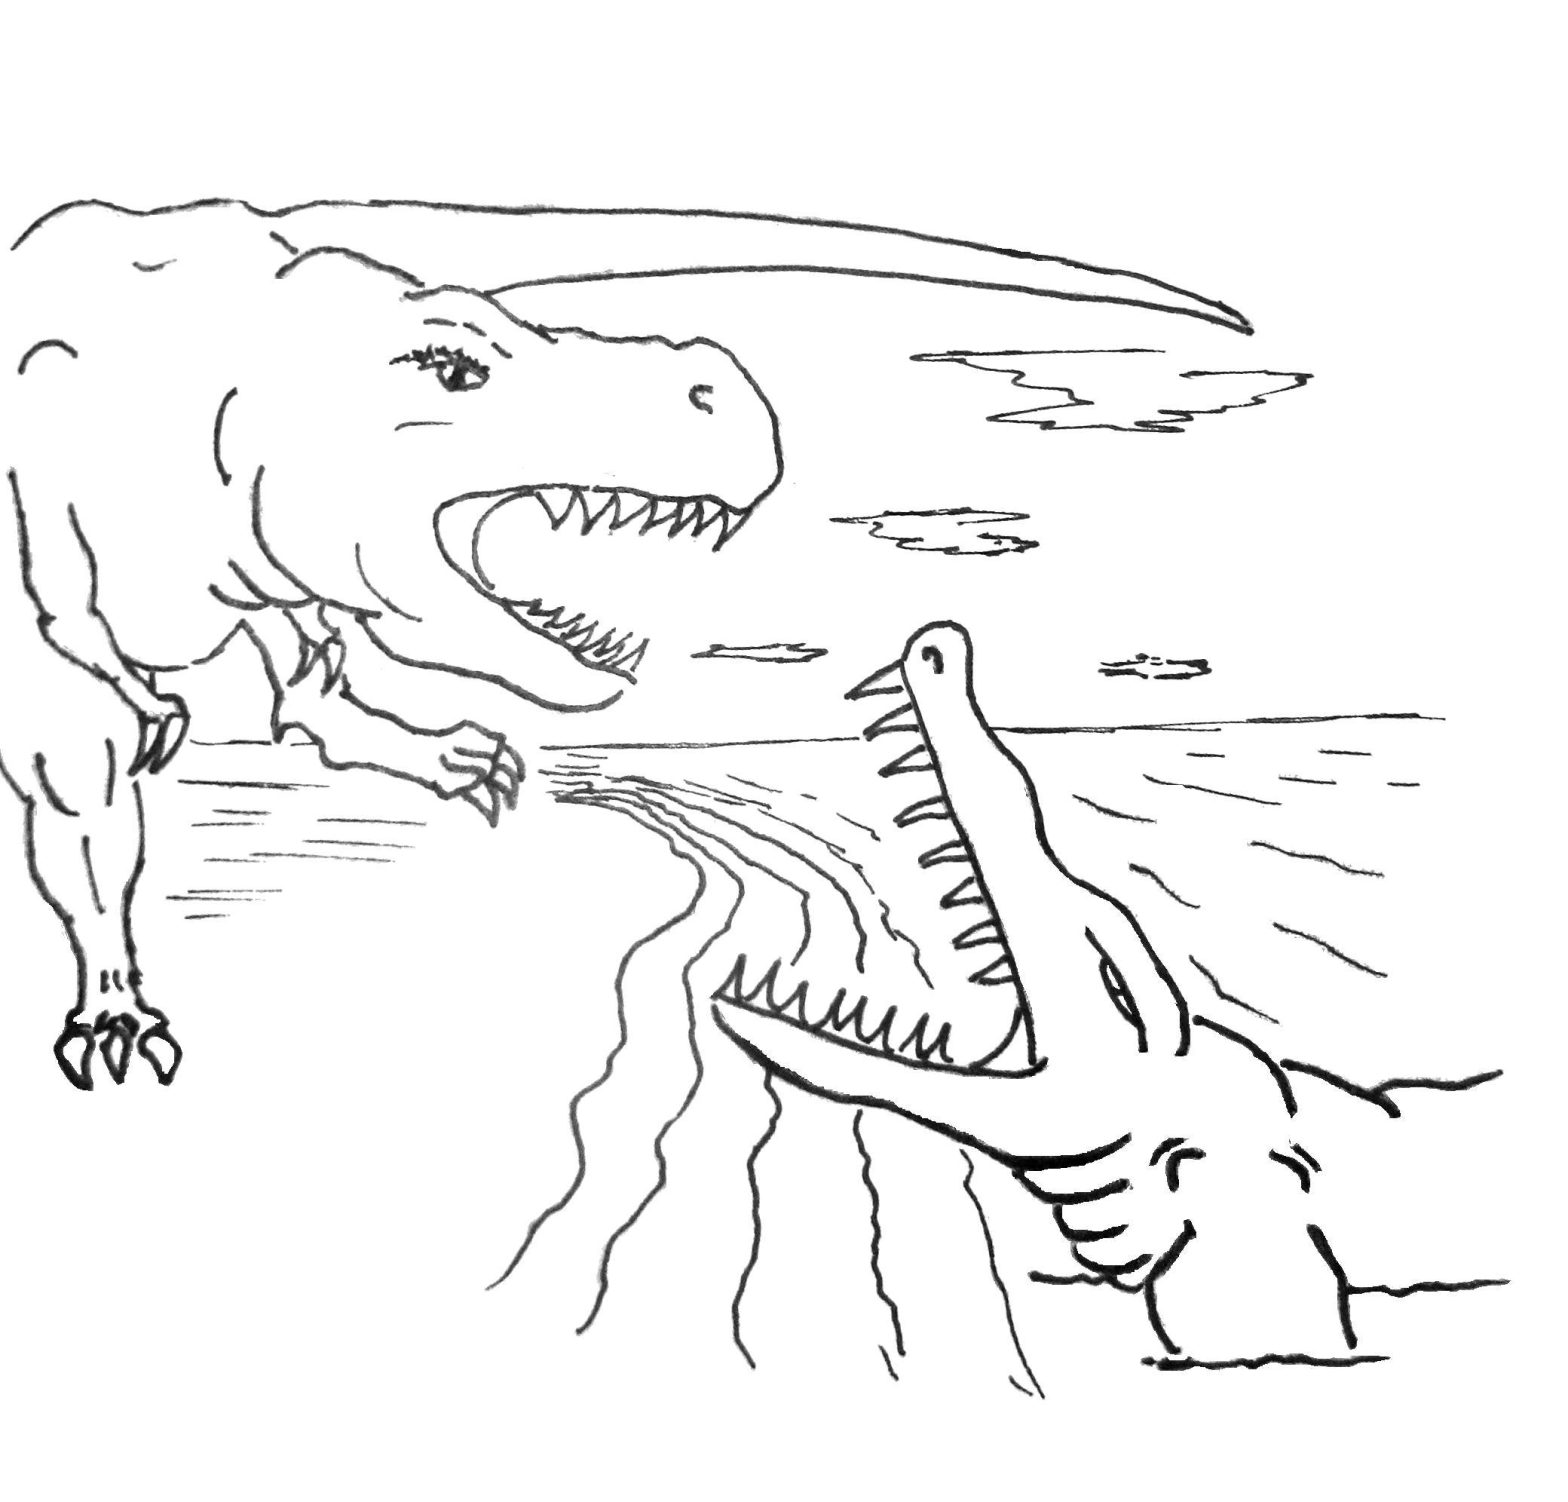 Раскраска с динозавром (динозавры)